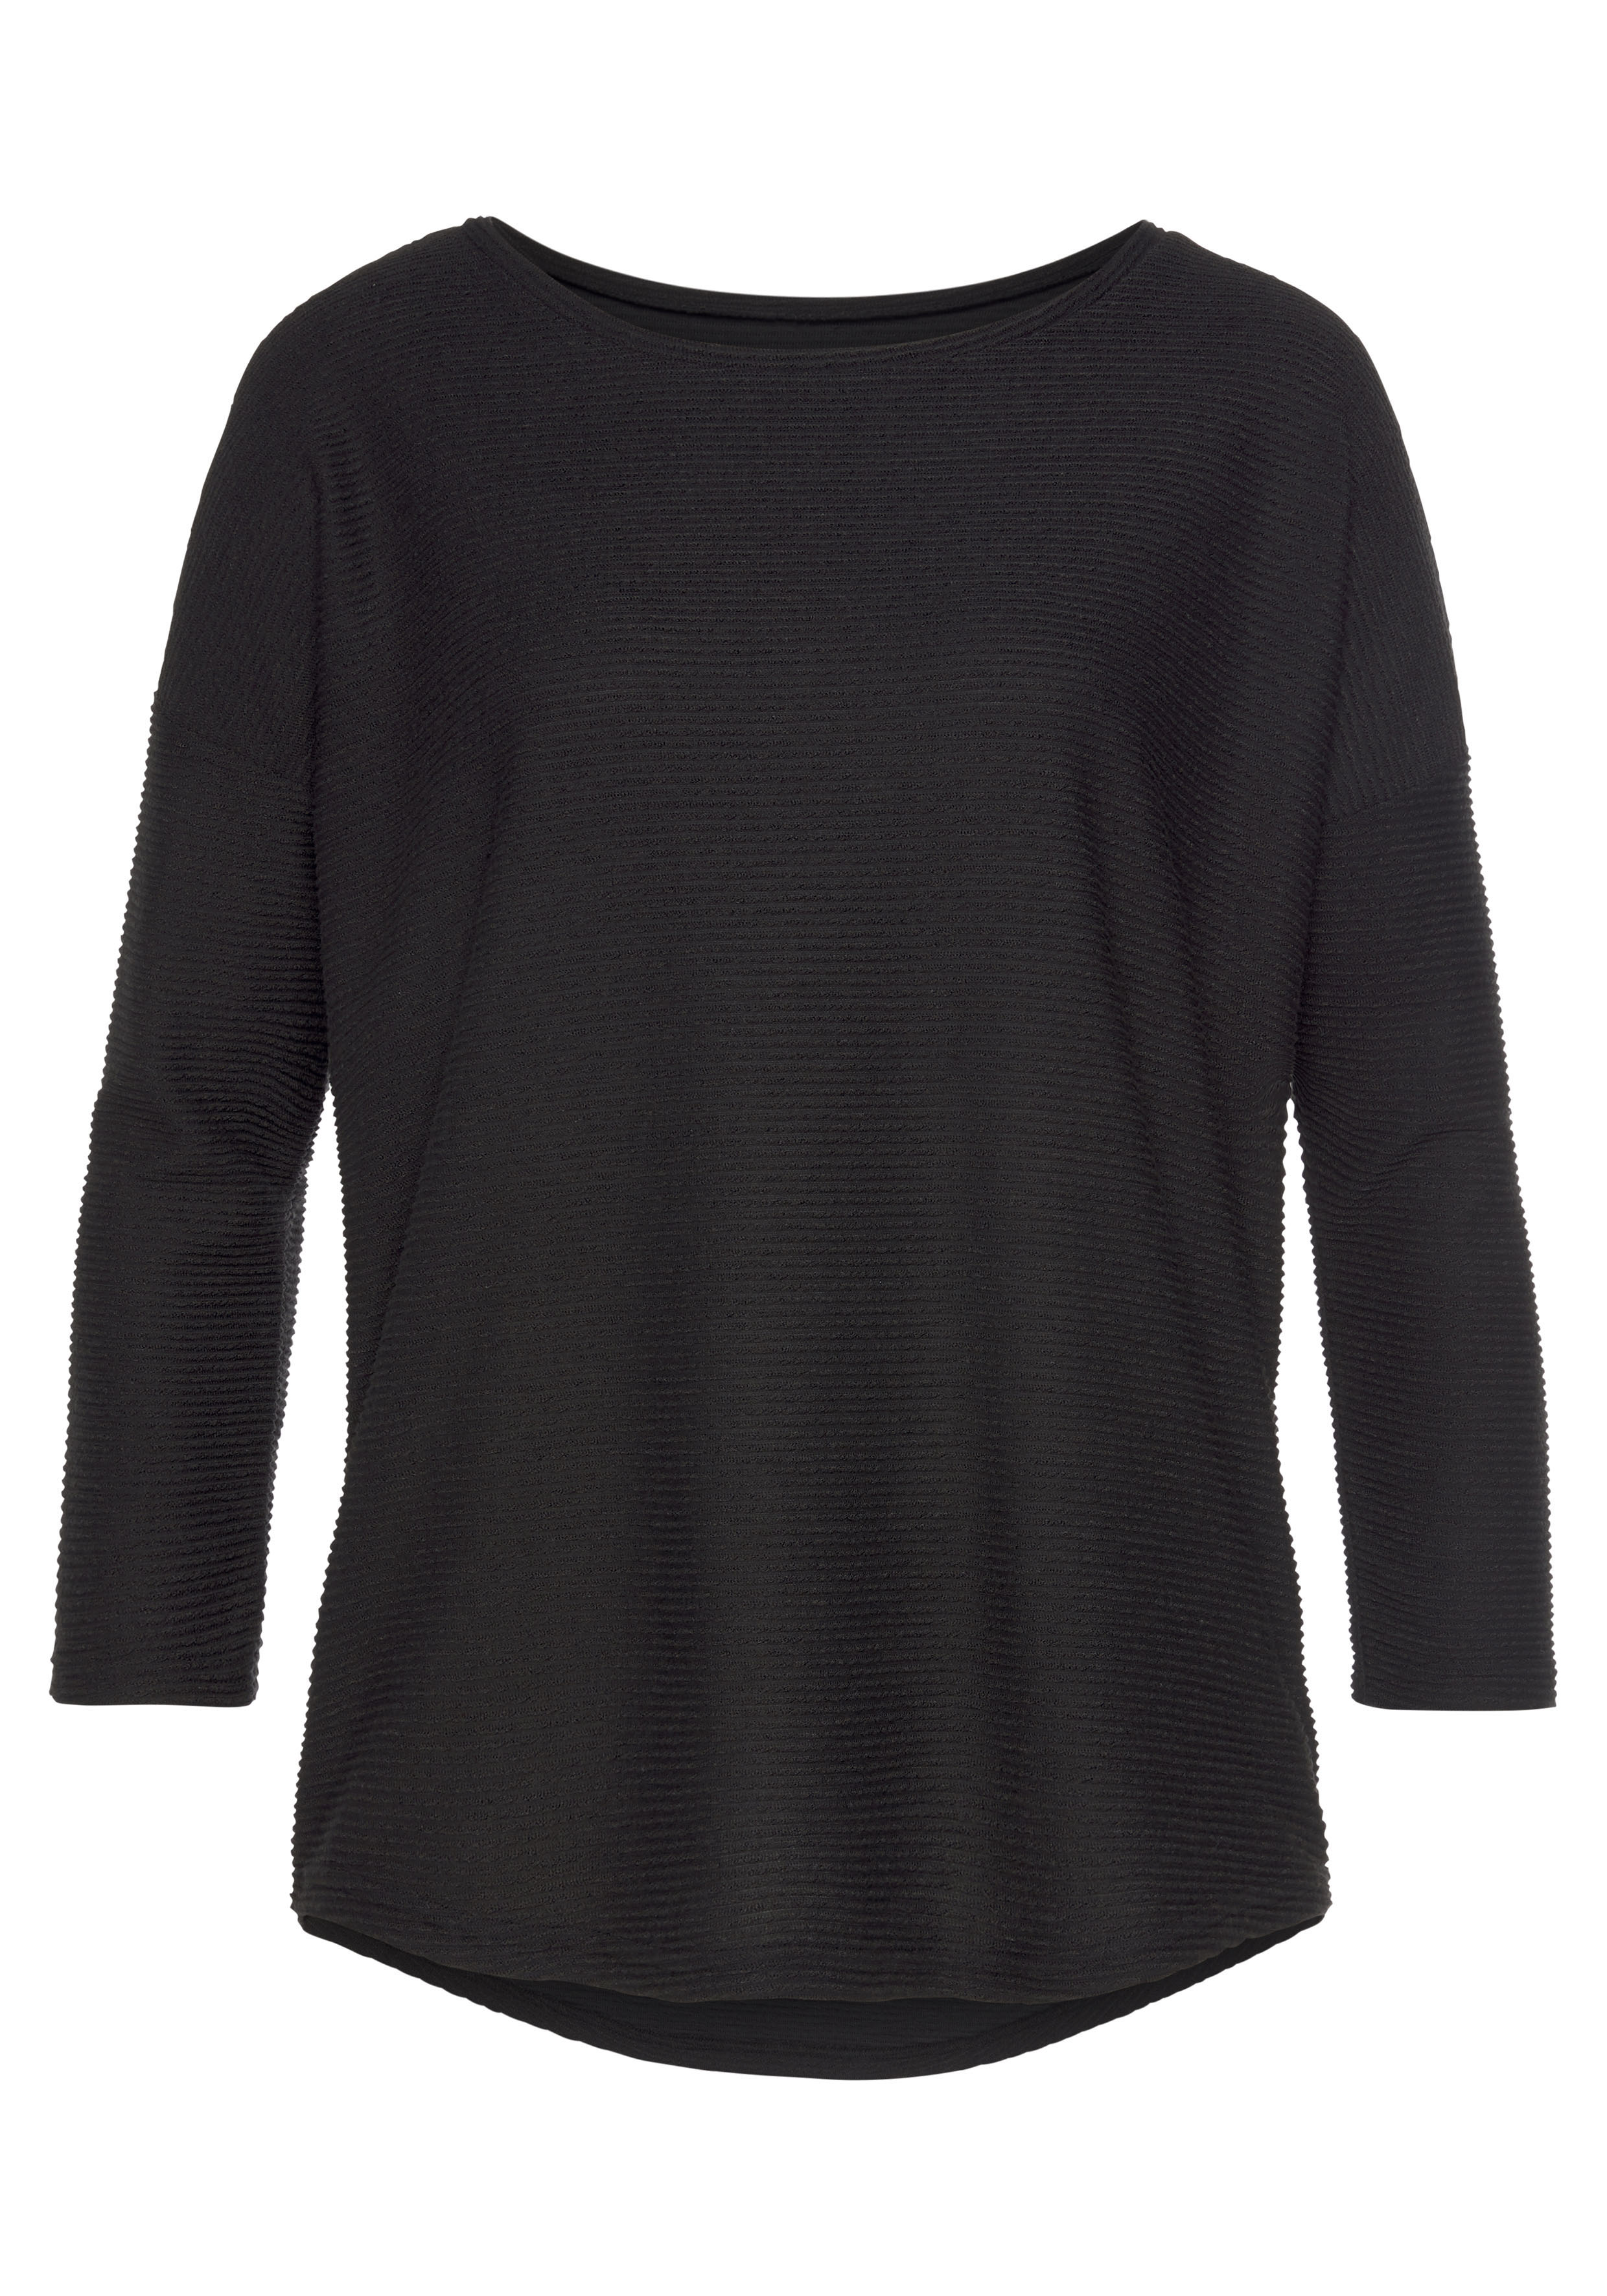 & online Unterwäsche Bademode, » LASCANA Lingerie kaufen aus strukturierter Qualität | 3/4-Arm-Shirt, Vivance